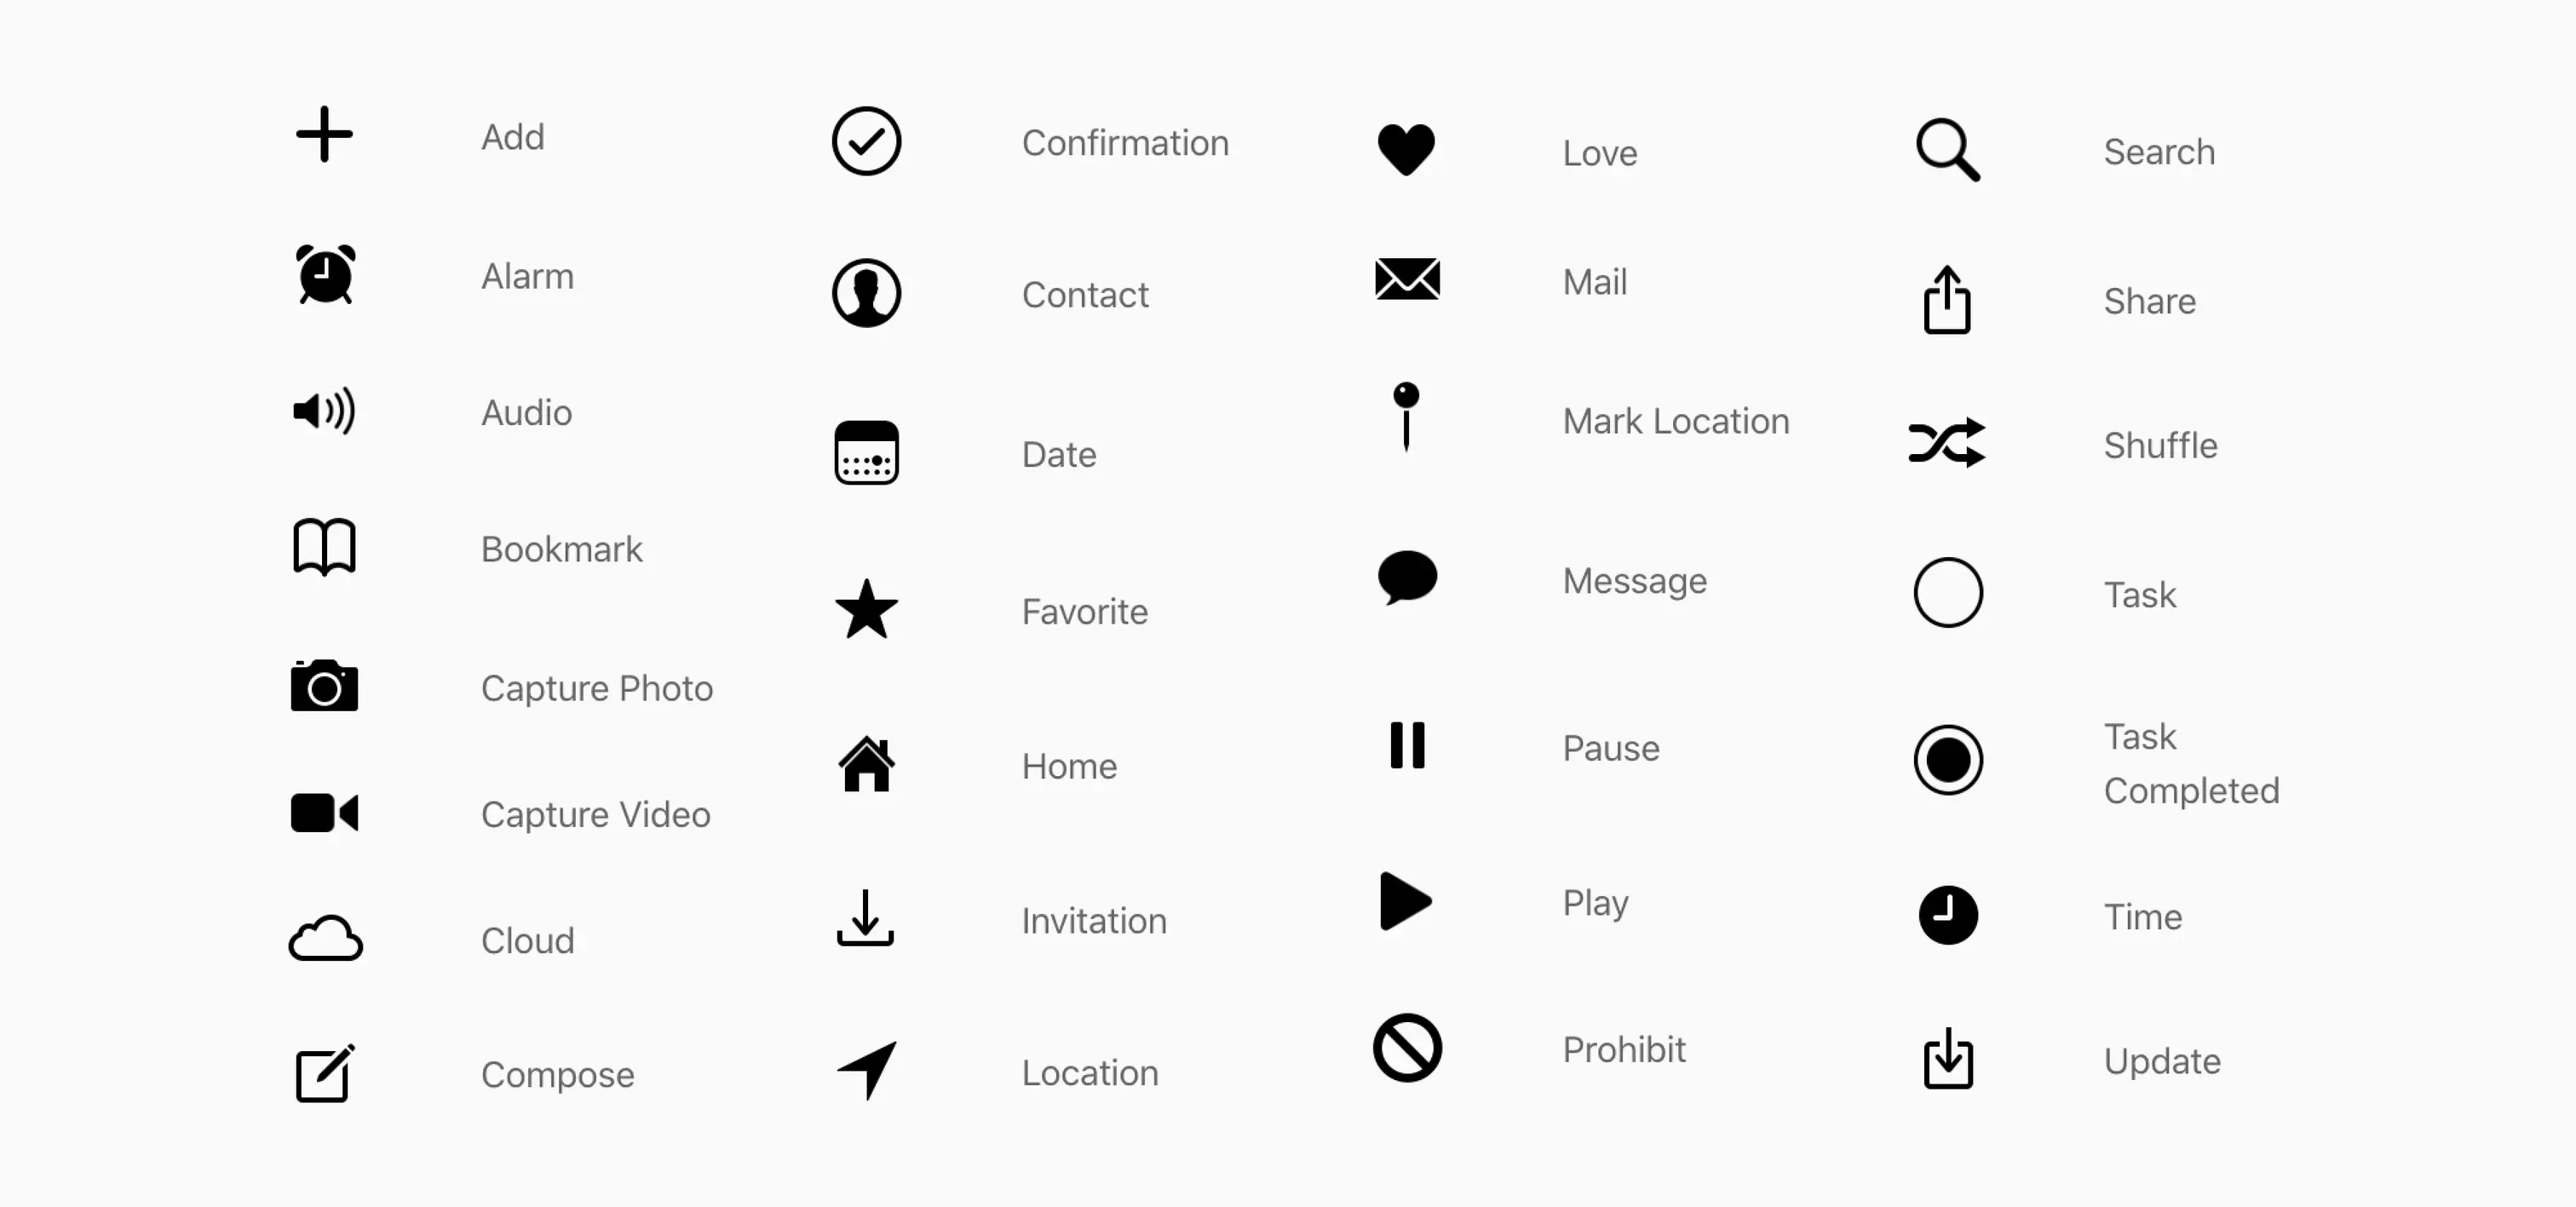 在 iOS 13 之前，来自 Apple [主页屏幕的快捷操作](https://developer.apple.com/design/human-interface-guidelines/ios/icons-and-images/system-icons/) 的 icon